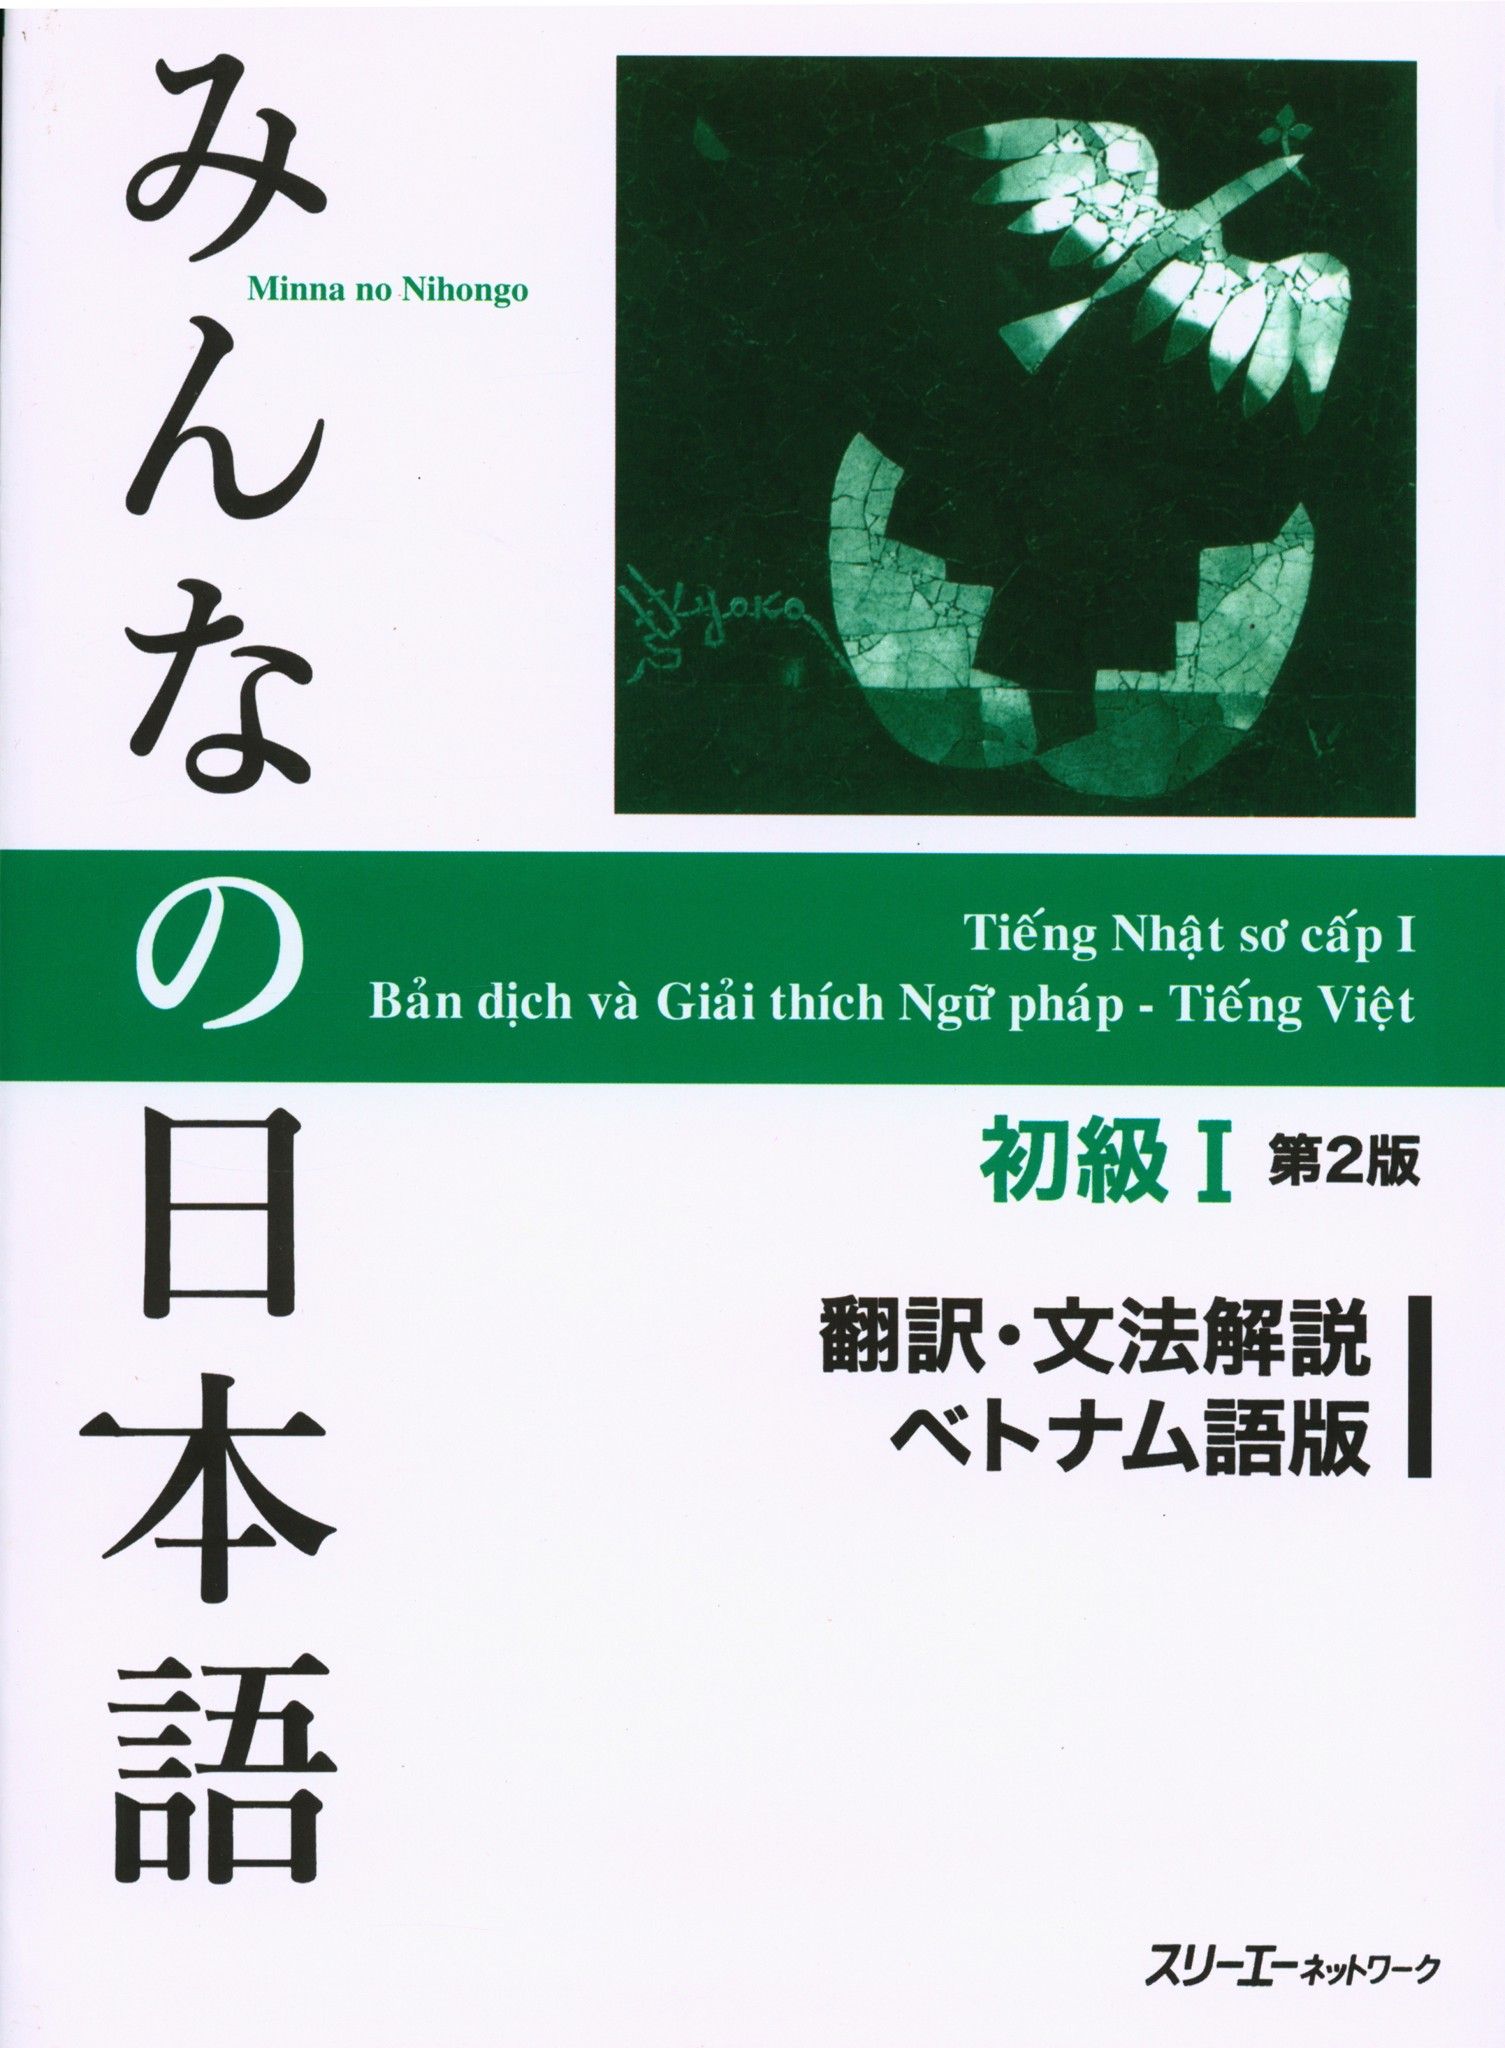 Bản Dịch Va Giải Thich Ngữ Phap Minano Nihongo Sơ Cấp 1 Bản Mới Nhasachthanhdung